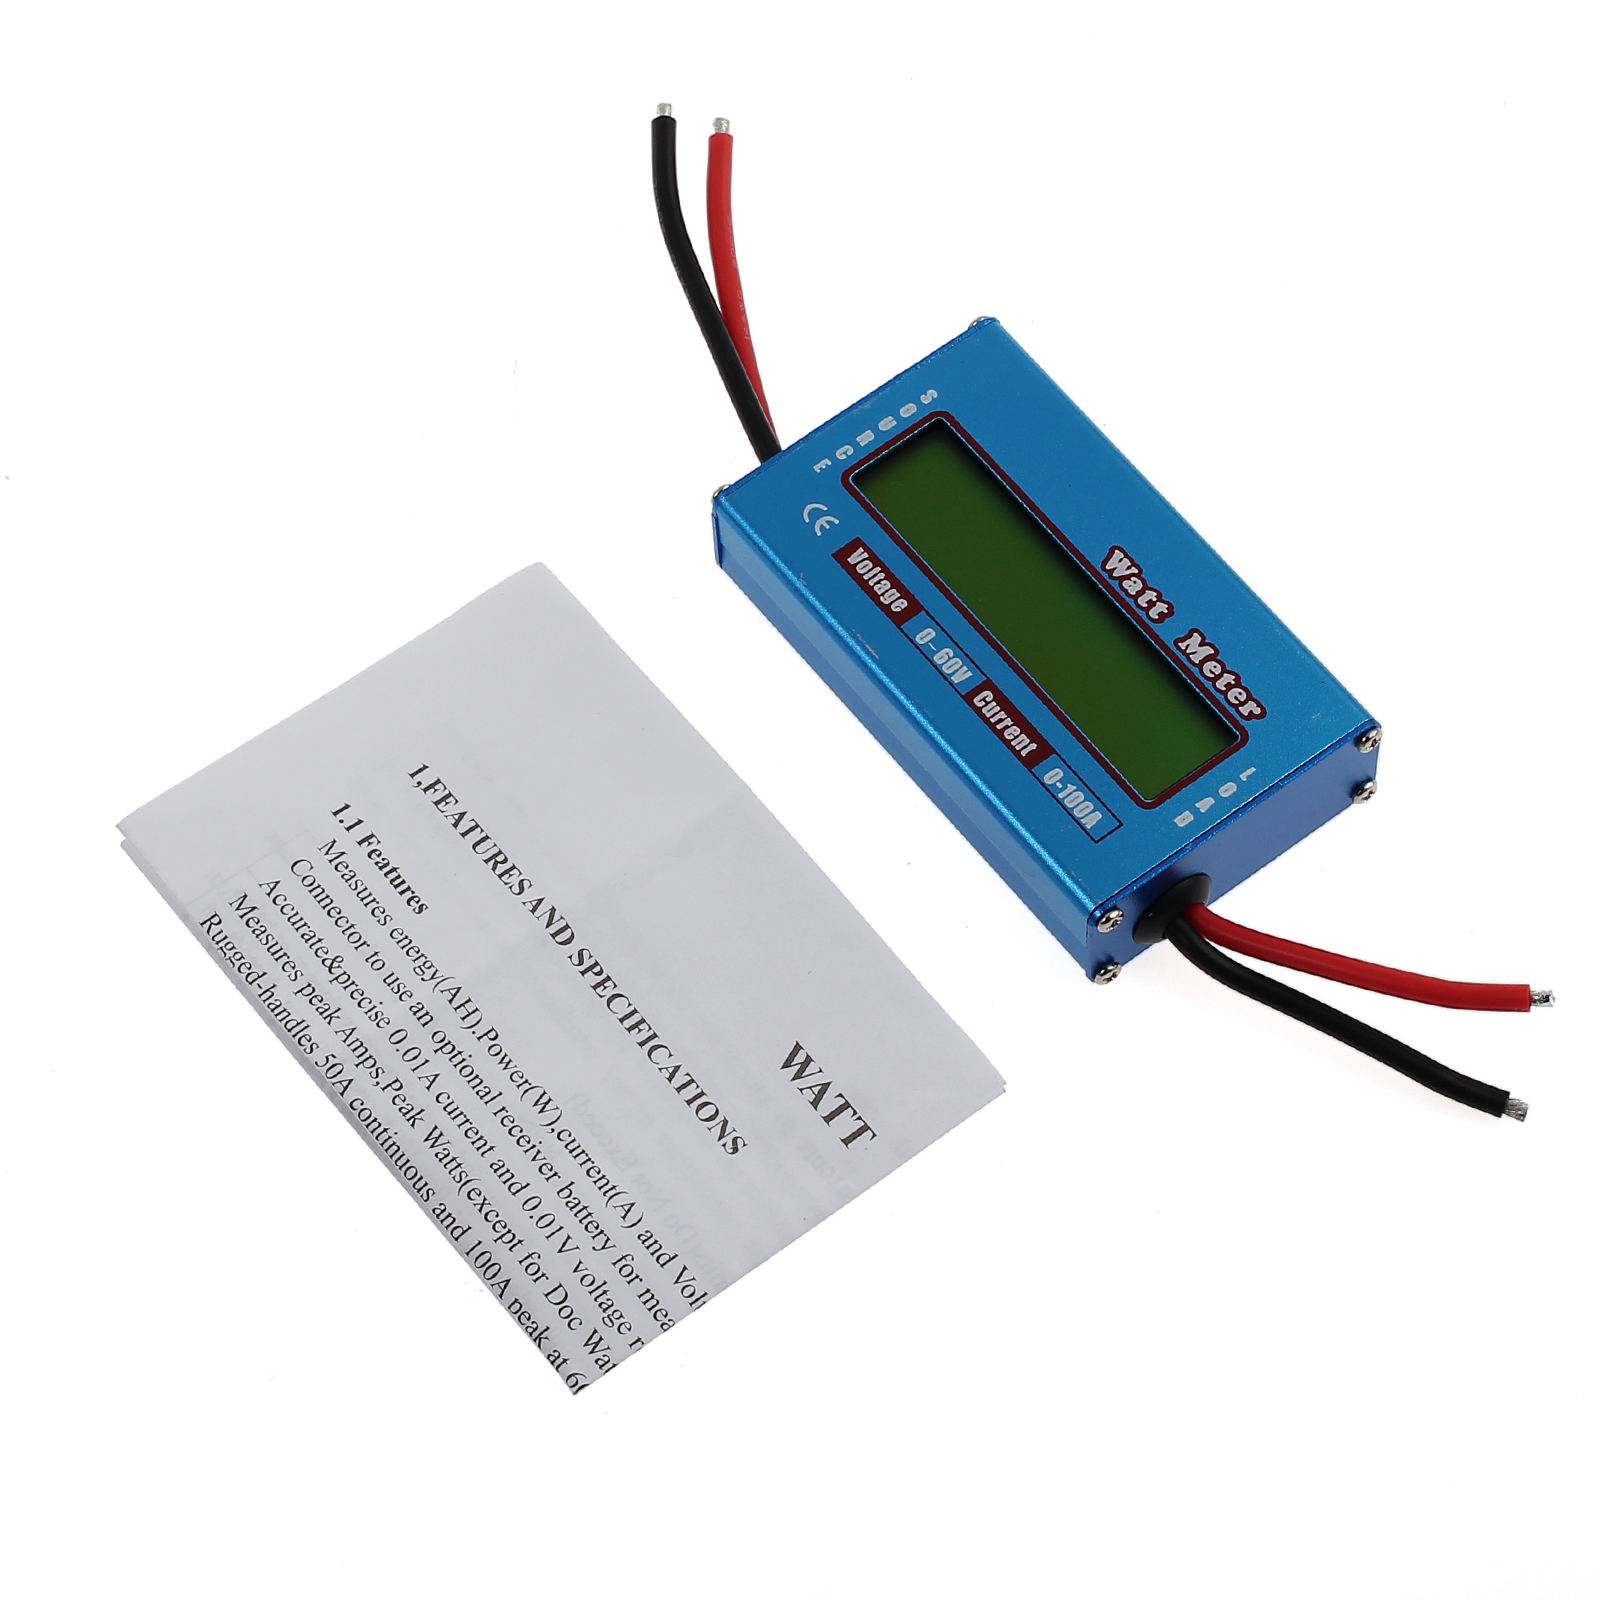 Lanceasy Monitor LCD Digital Medidor De Vatios 60V 100A DC Amper/ímetro RC Bater/ía Power Amp Analizador